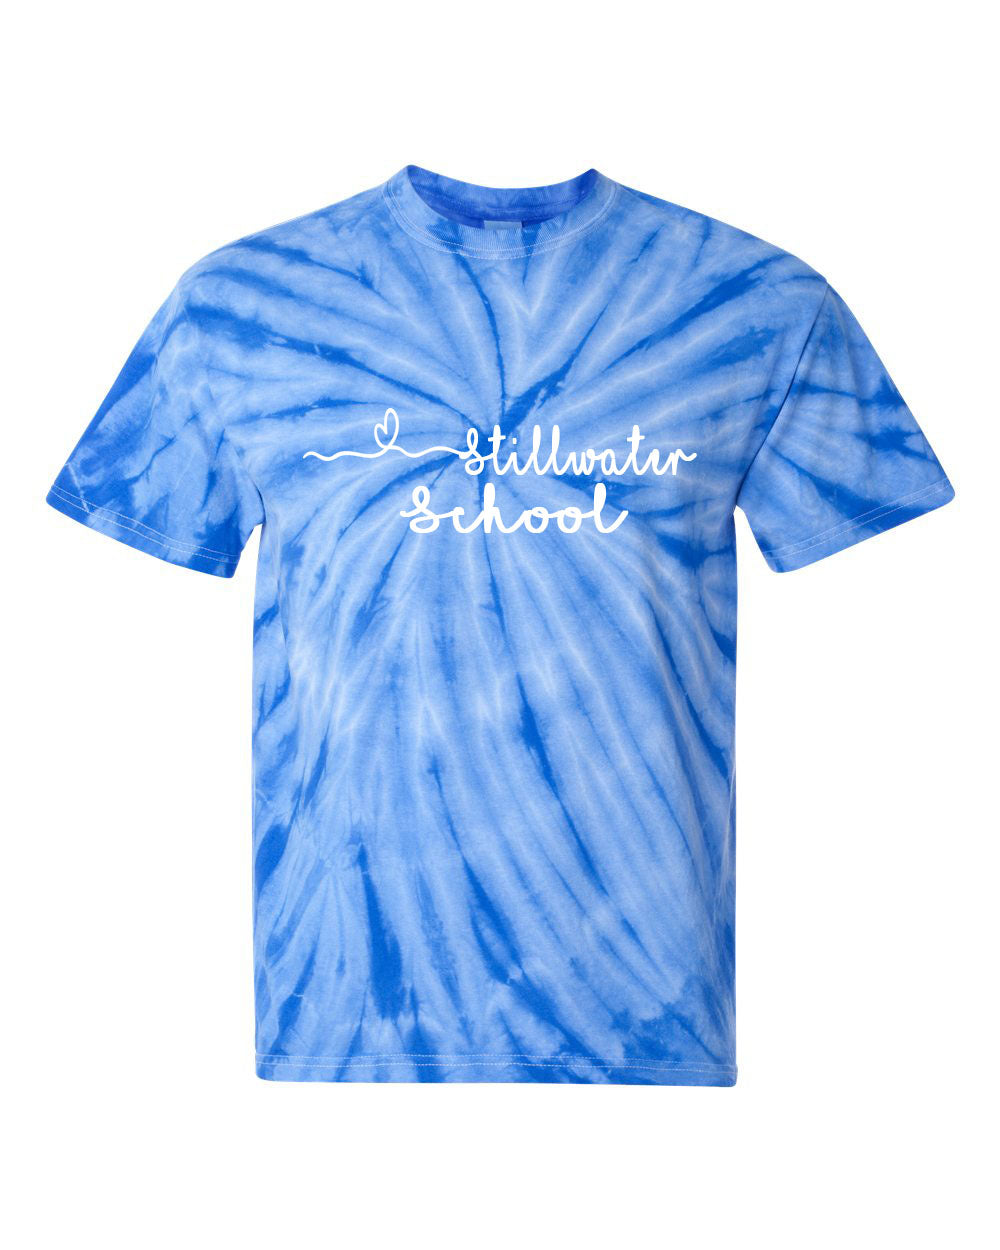 Stillwater Design 9 Tie Dye t-shirt